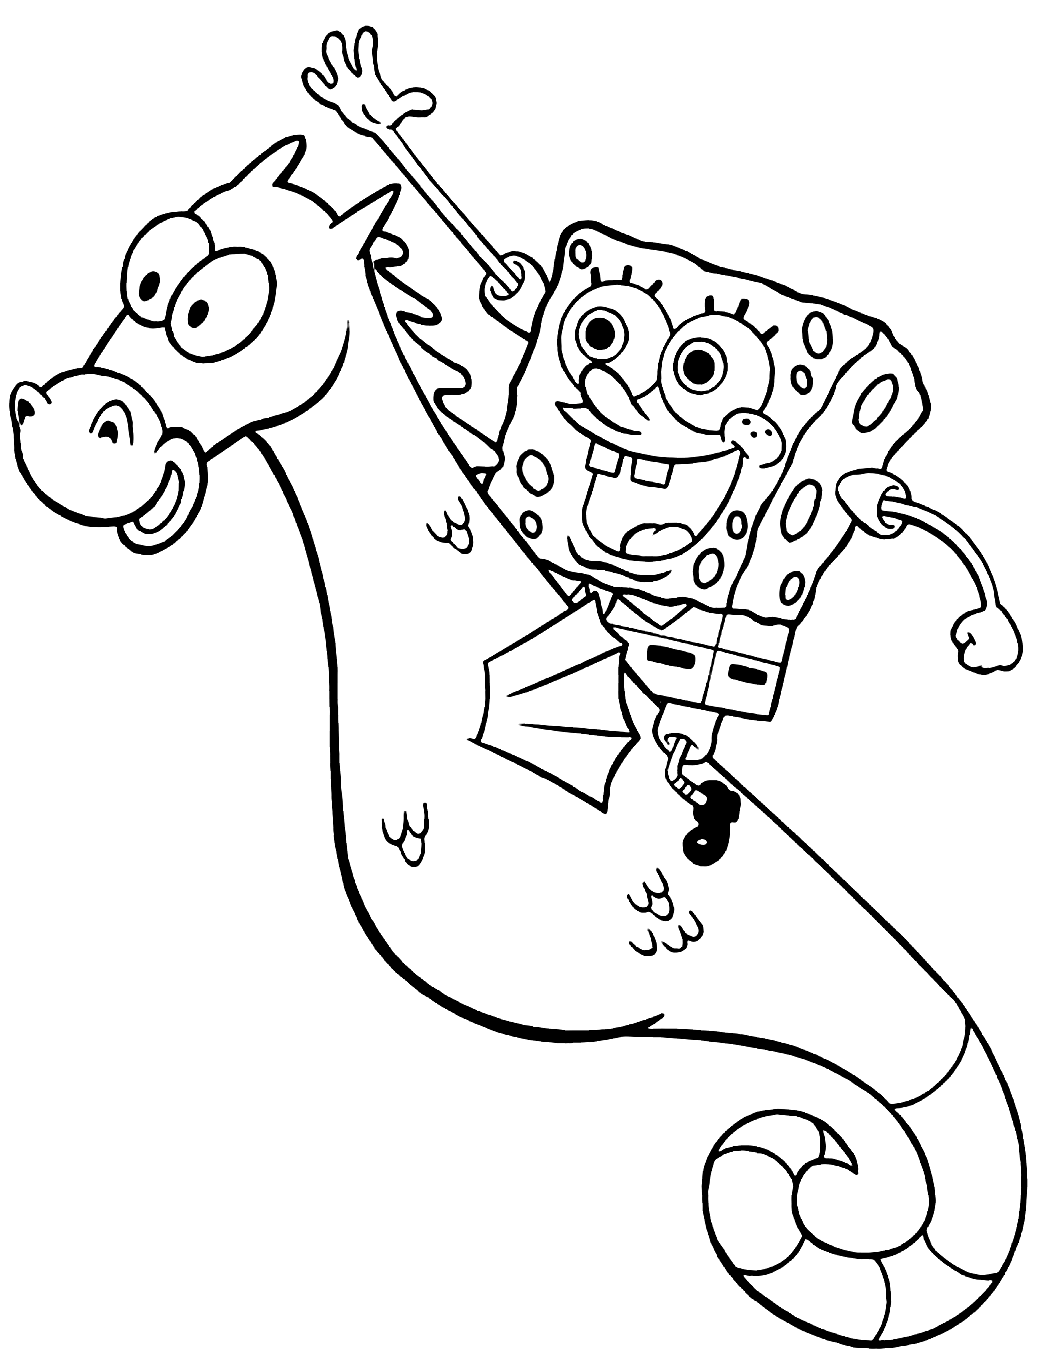 Spongebob Riding Seahorse from Spongebob